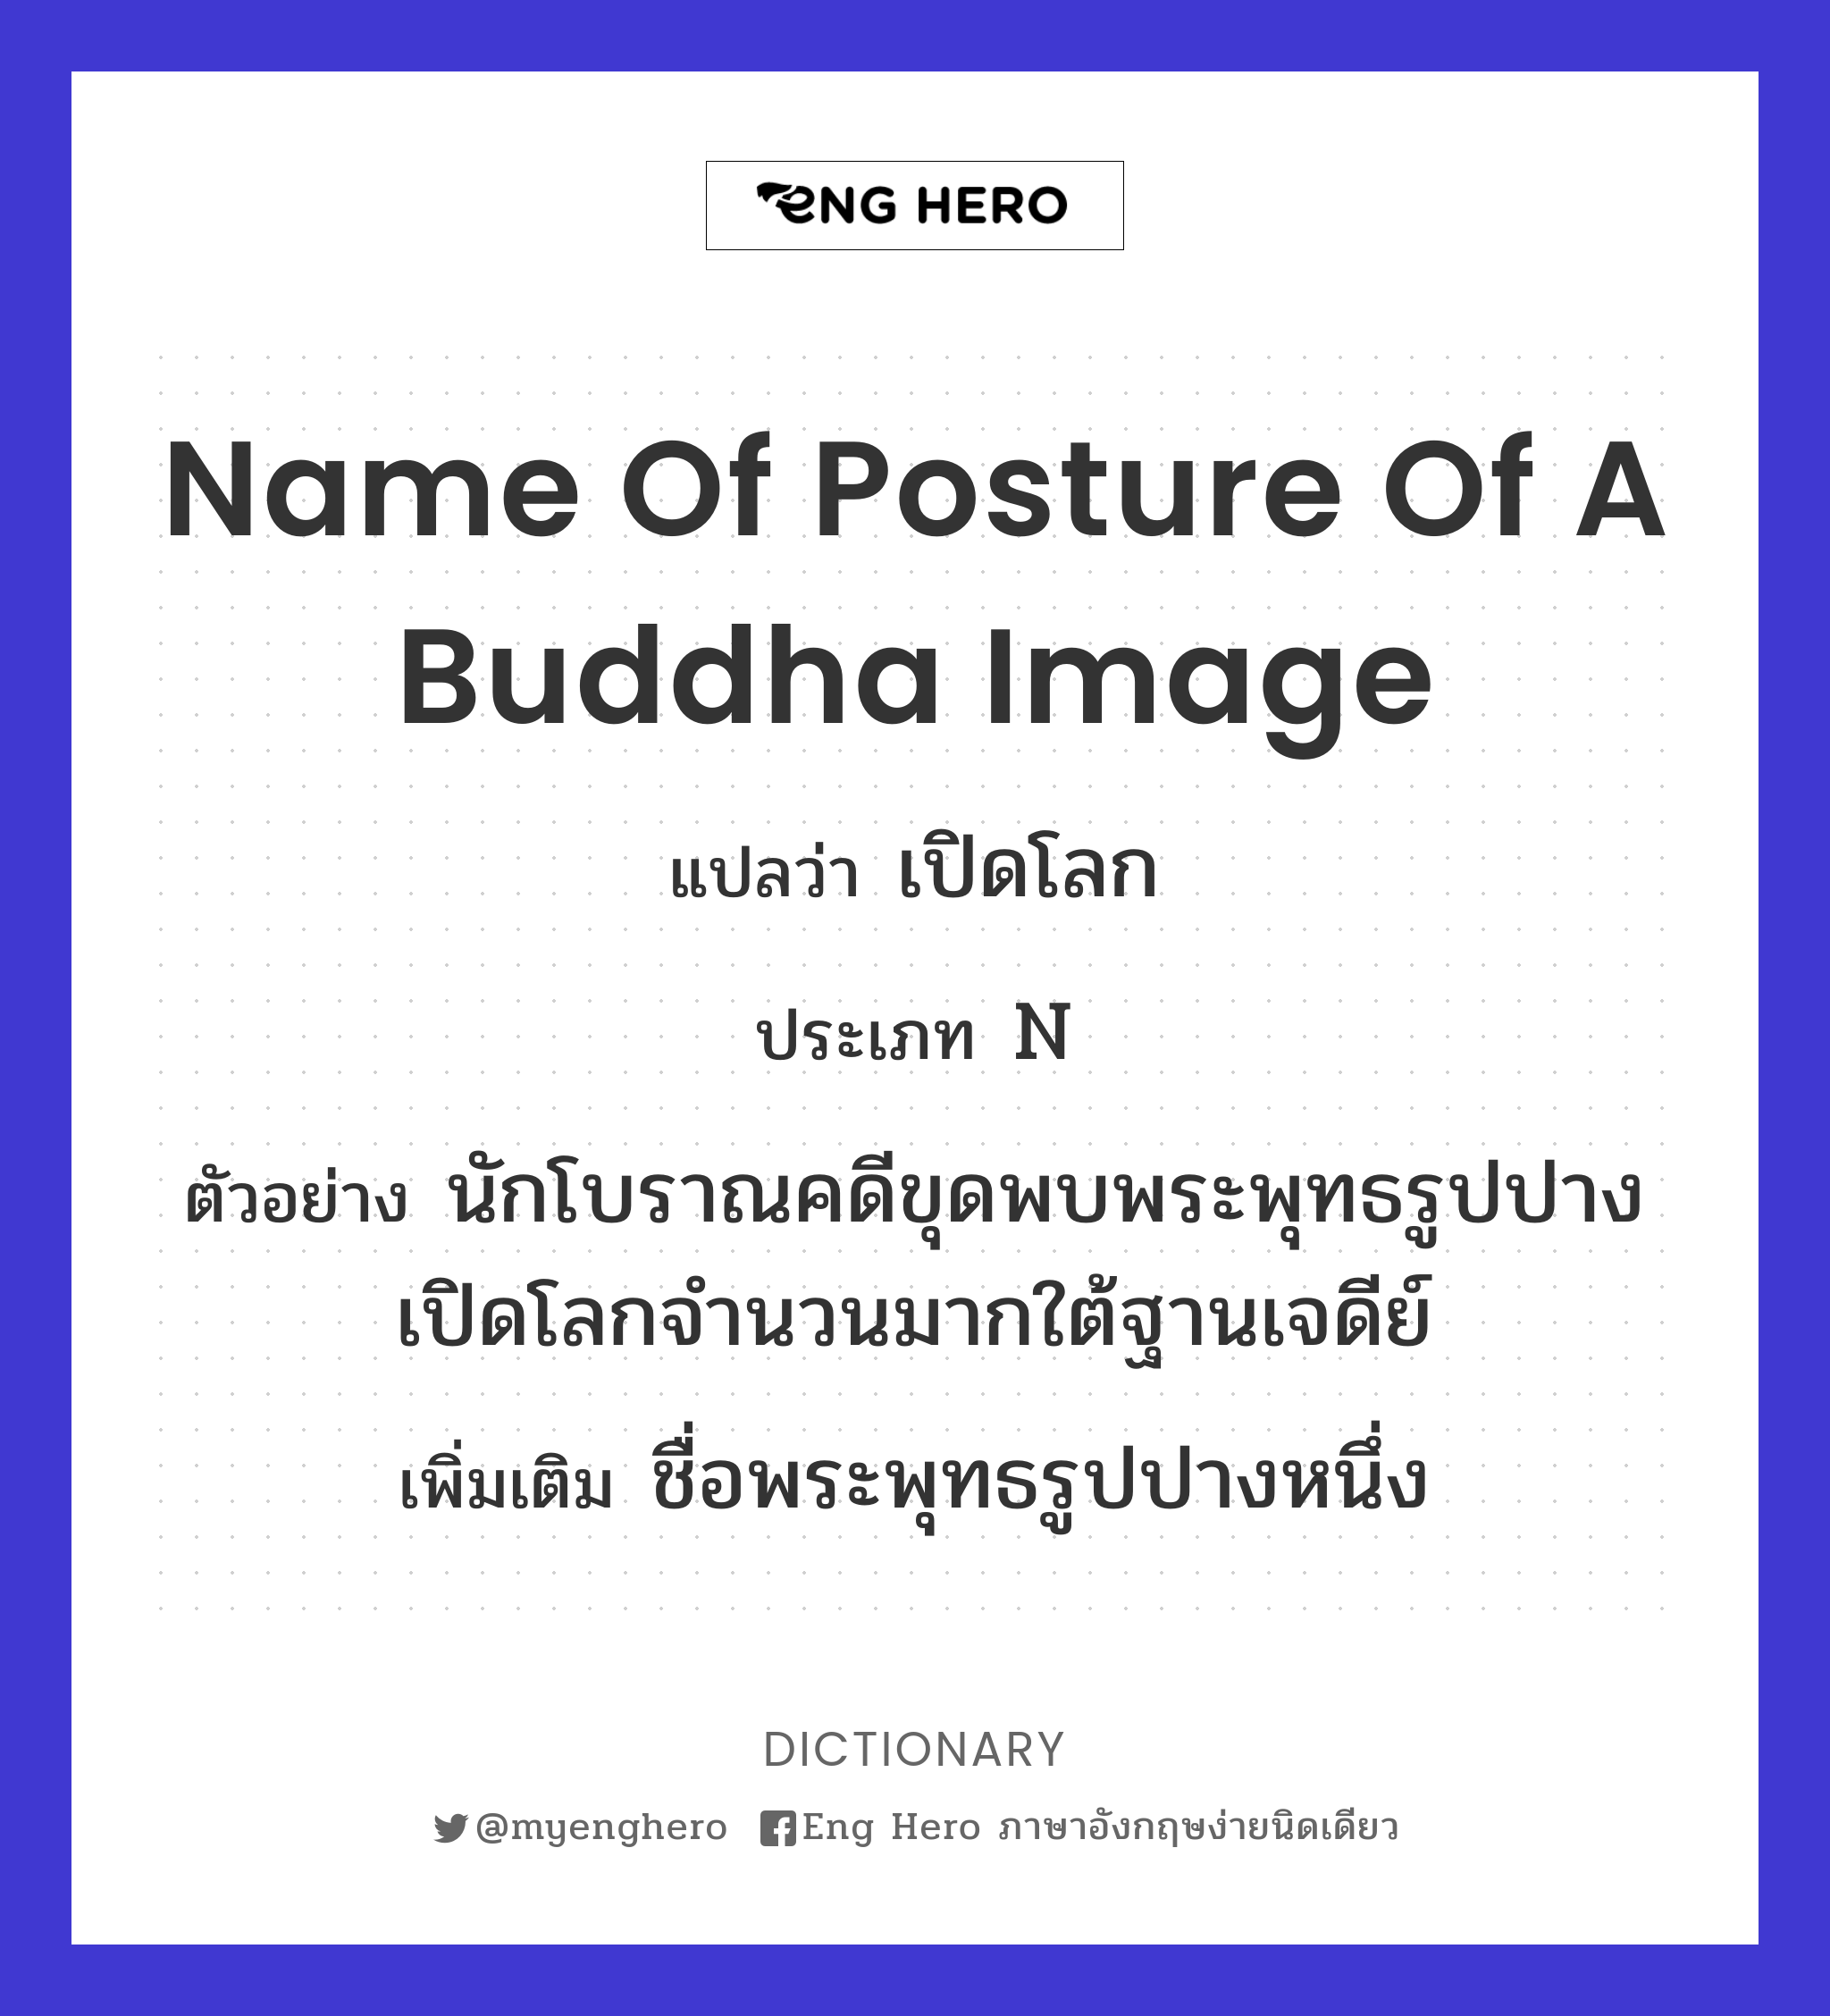 name of posture of a Buddha image